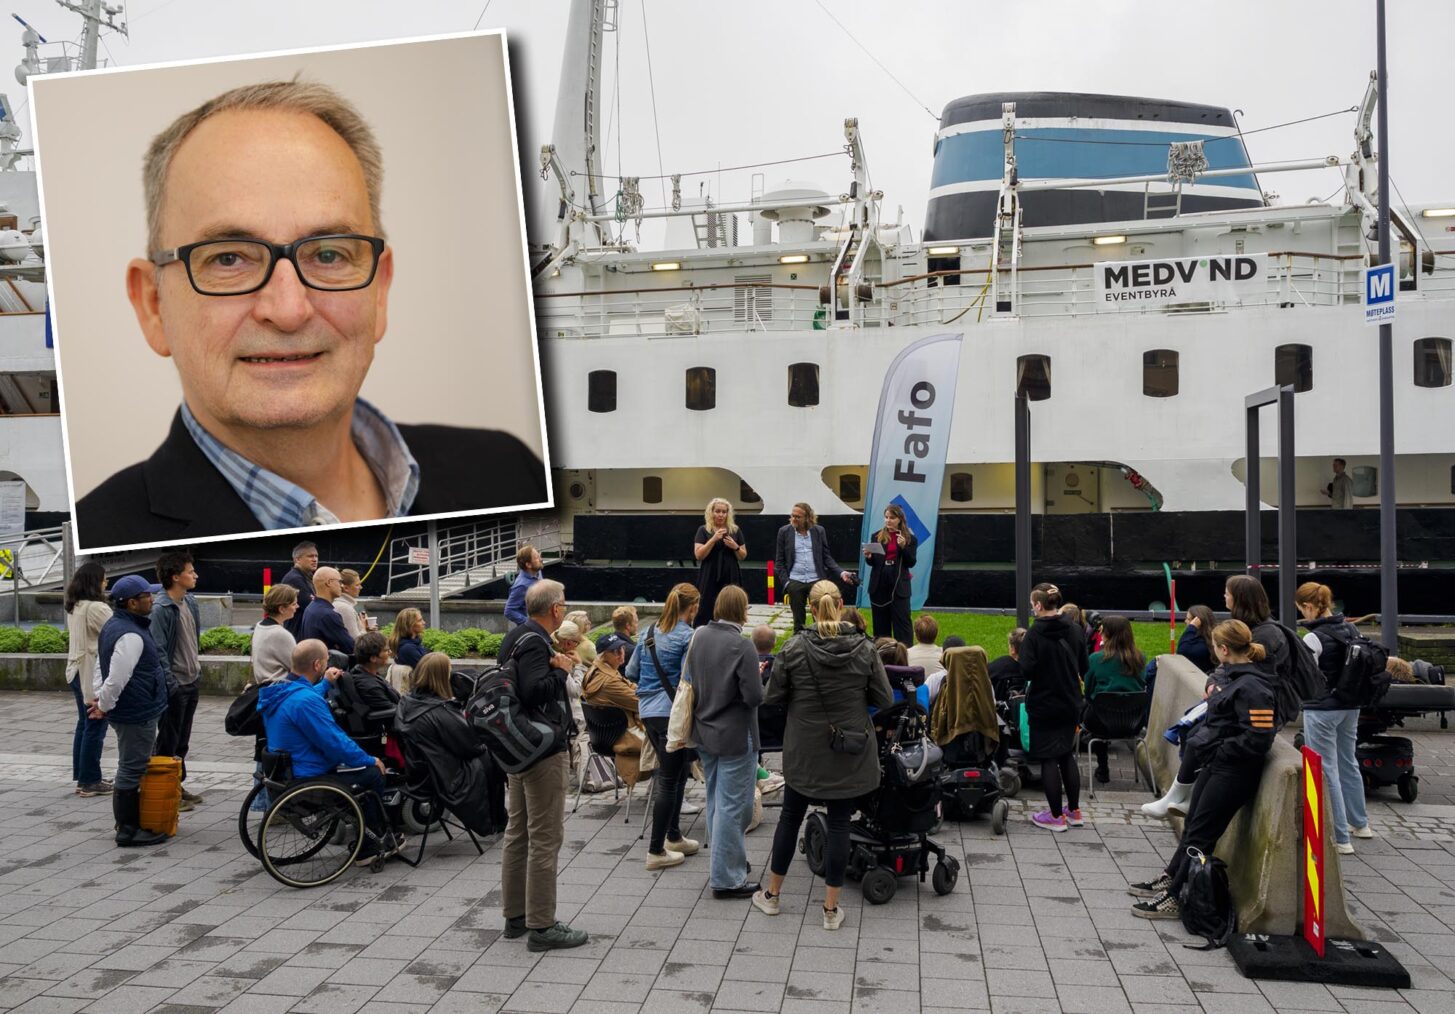 Oversiktsbilde av møtet på fortauet utenfor båten. Lars Ødegårds portrett er innfelt.